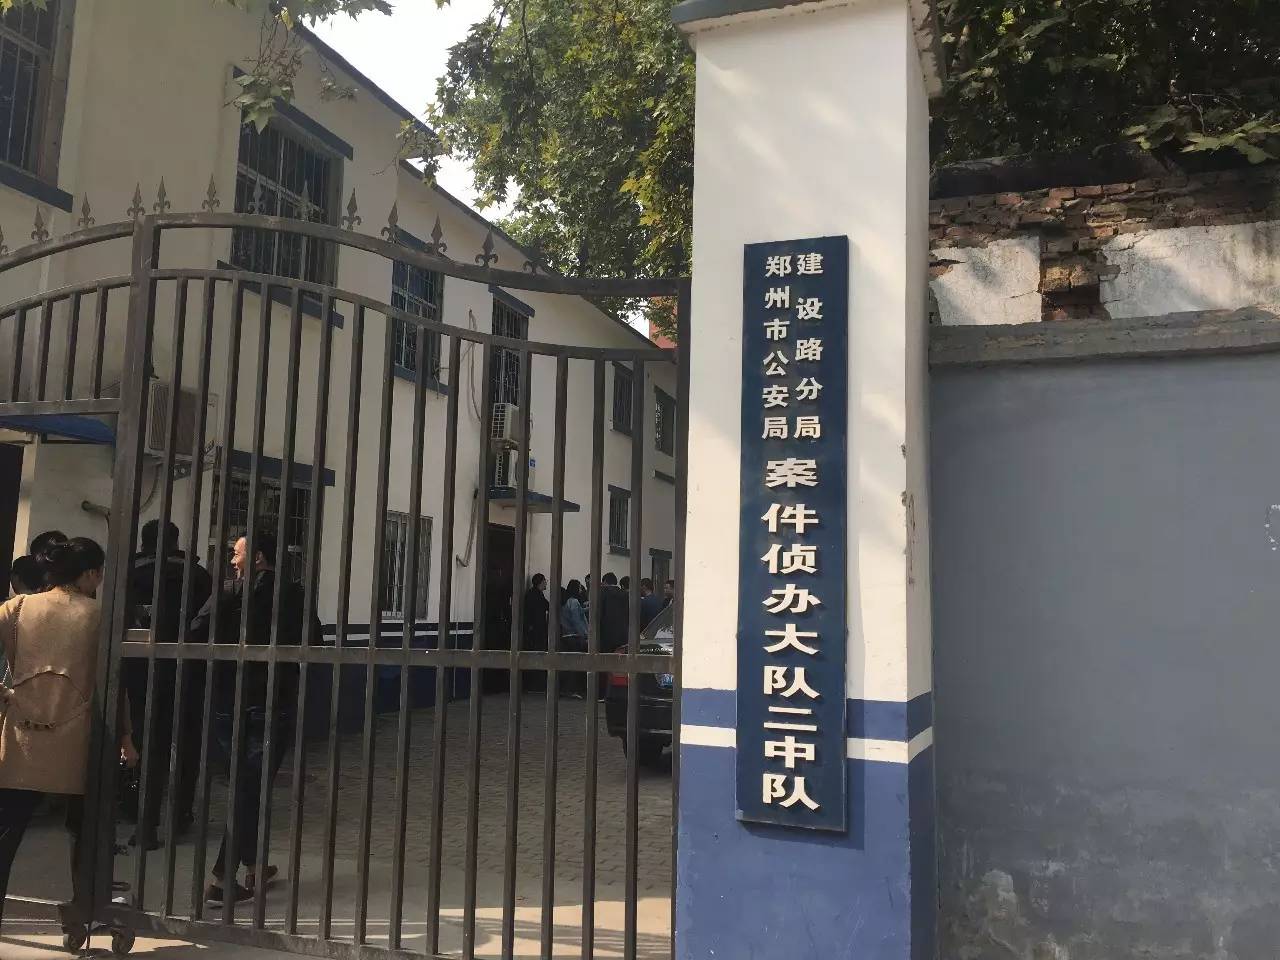 我台新闻中心记者罗燕第一时间来到郑州市公安局建设路分局进行采访